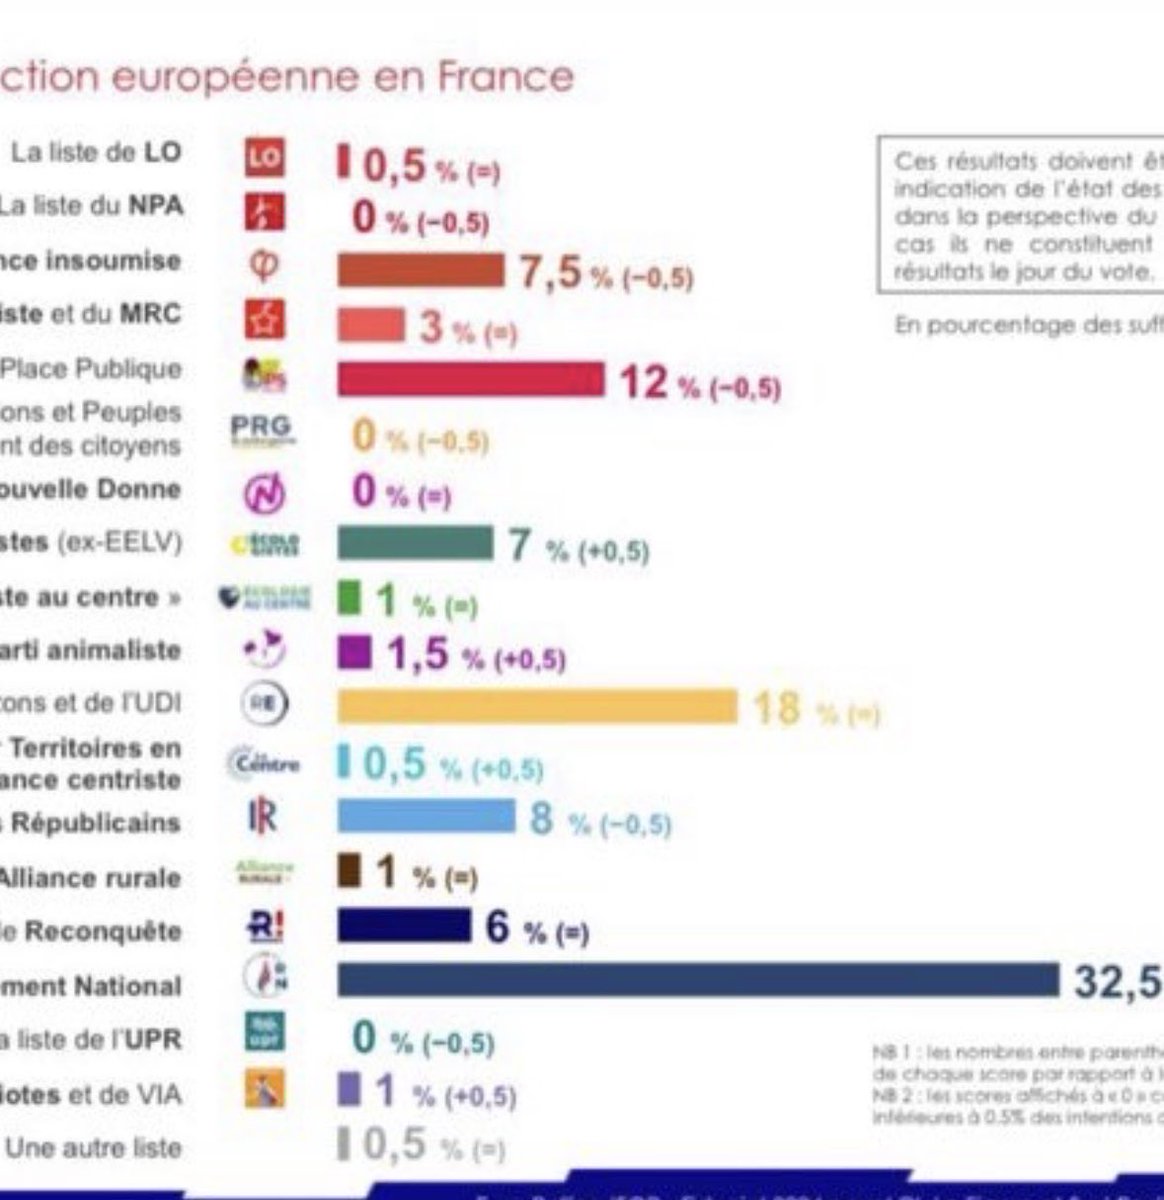 #LesPatriotes 🇫🇷🧡en hausse, 1%. #UPR tombe à 0%. Asselineau a eu tort de refuser l’alliance qu’on proposait. Un vote utile Frexiteur se dessine. Une dynamique se crée !  #Frexit #Libertés #Paix